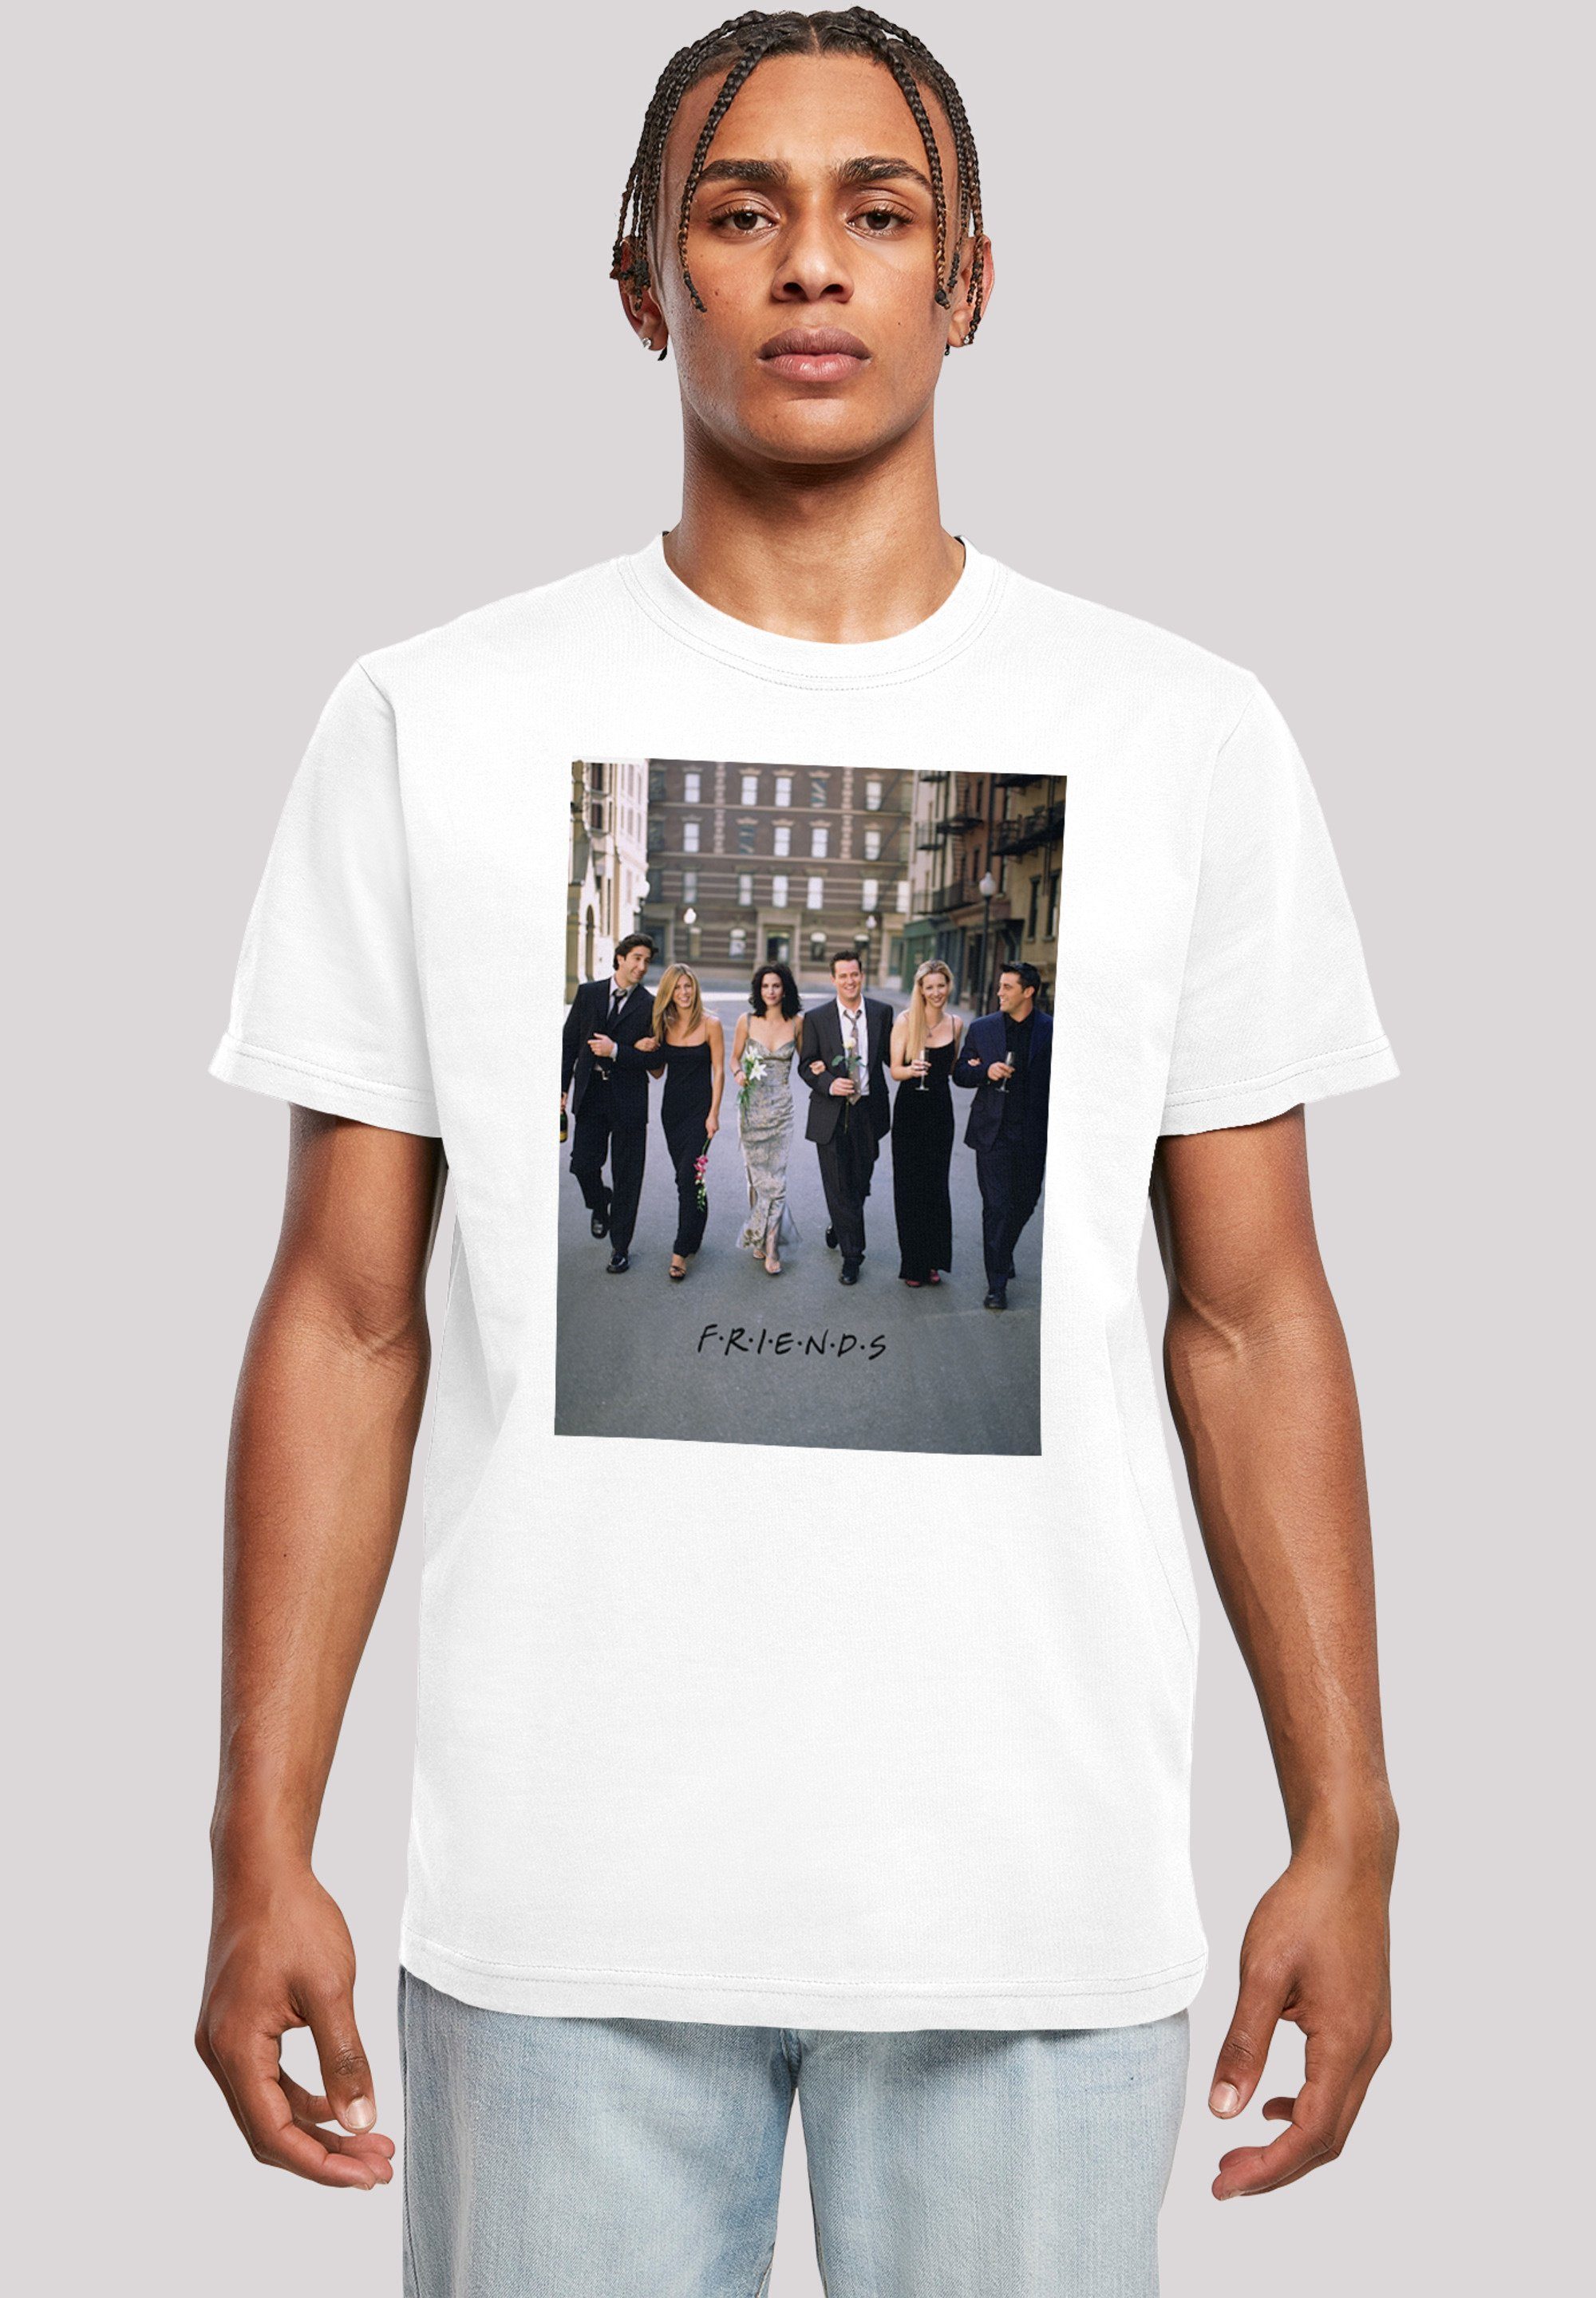 Flowers Merch,Regular-Fit,Basic,Bedruckt F4NT4STIC Herren,Premium FRIENDS Serie TV T-Shirt weiß